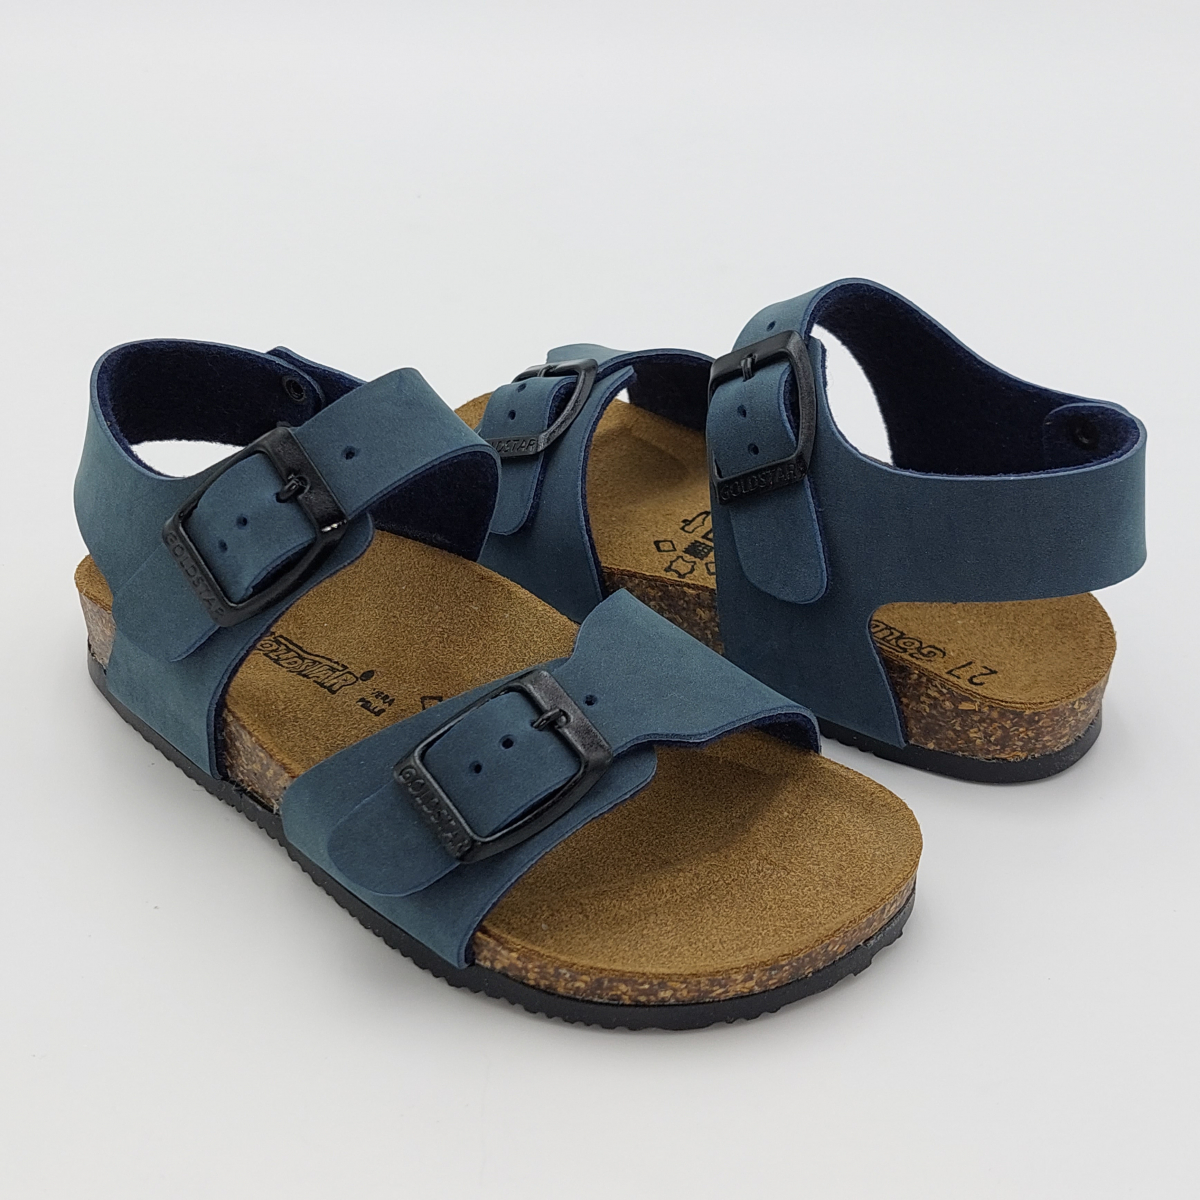 Goldstar sandali in micropelle Bianco-Blu da bambino 8805 91116 